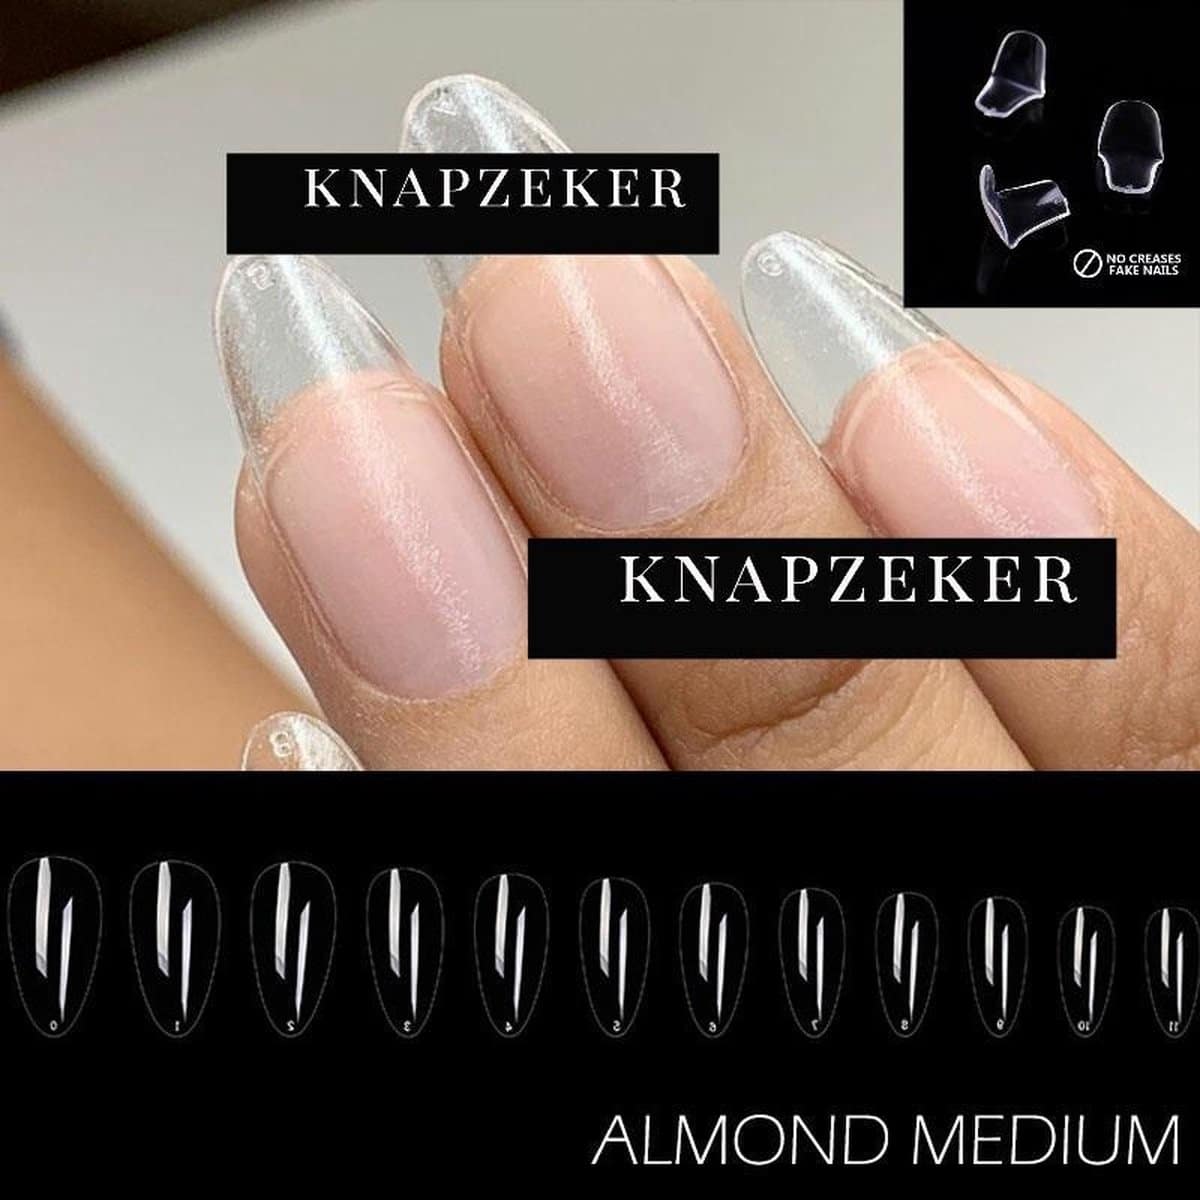 Gel Soft Flex Nepnagels plaknagels lijm almond shape nagels press on nails 100% soak-off - Fake nails- Nageltips Full Cover 240 Stuks Transparant / Clear Tips van hoge kwaliteit + nagelvijl +